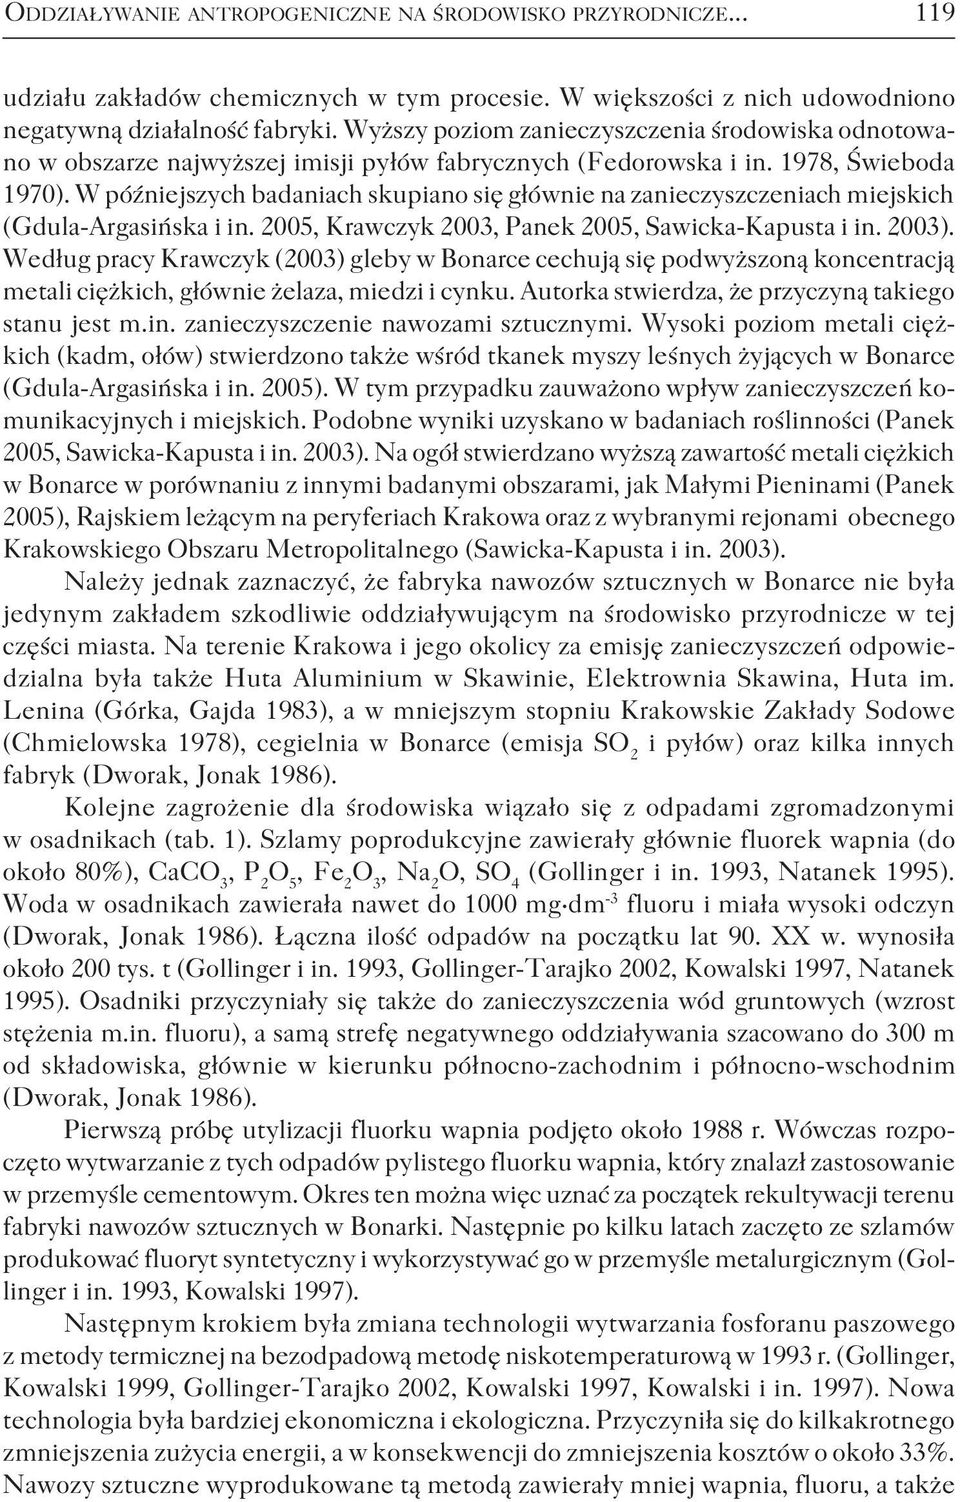 W późniejszych badaniach skupiano się głównie na zanieczyszczeniach miejskich (Gdula-Argasińska i in. 2005, Krawczyk 2003, Panek 2005, Sawicka-Kapusta i in. 2003).